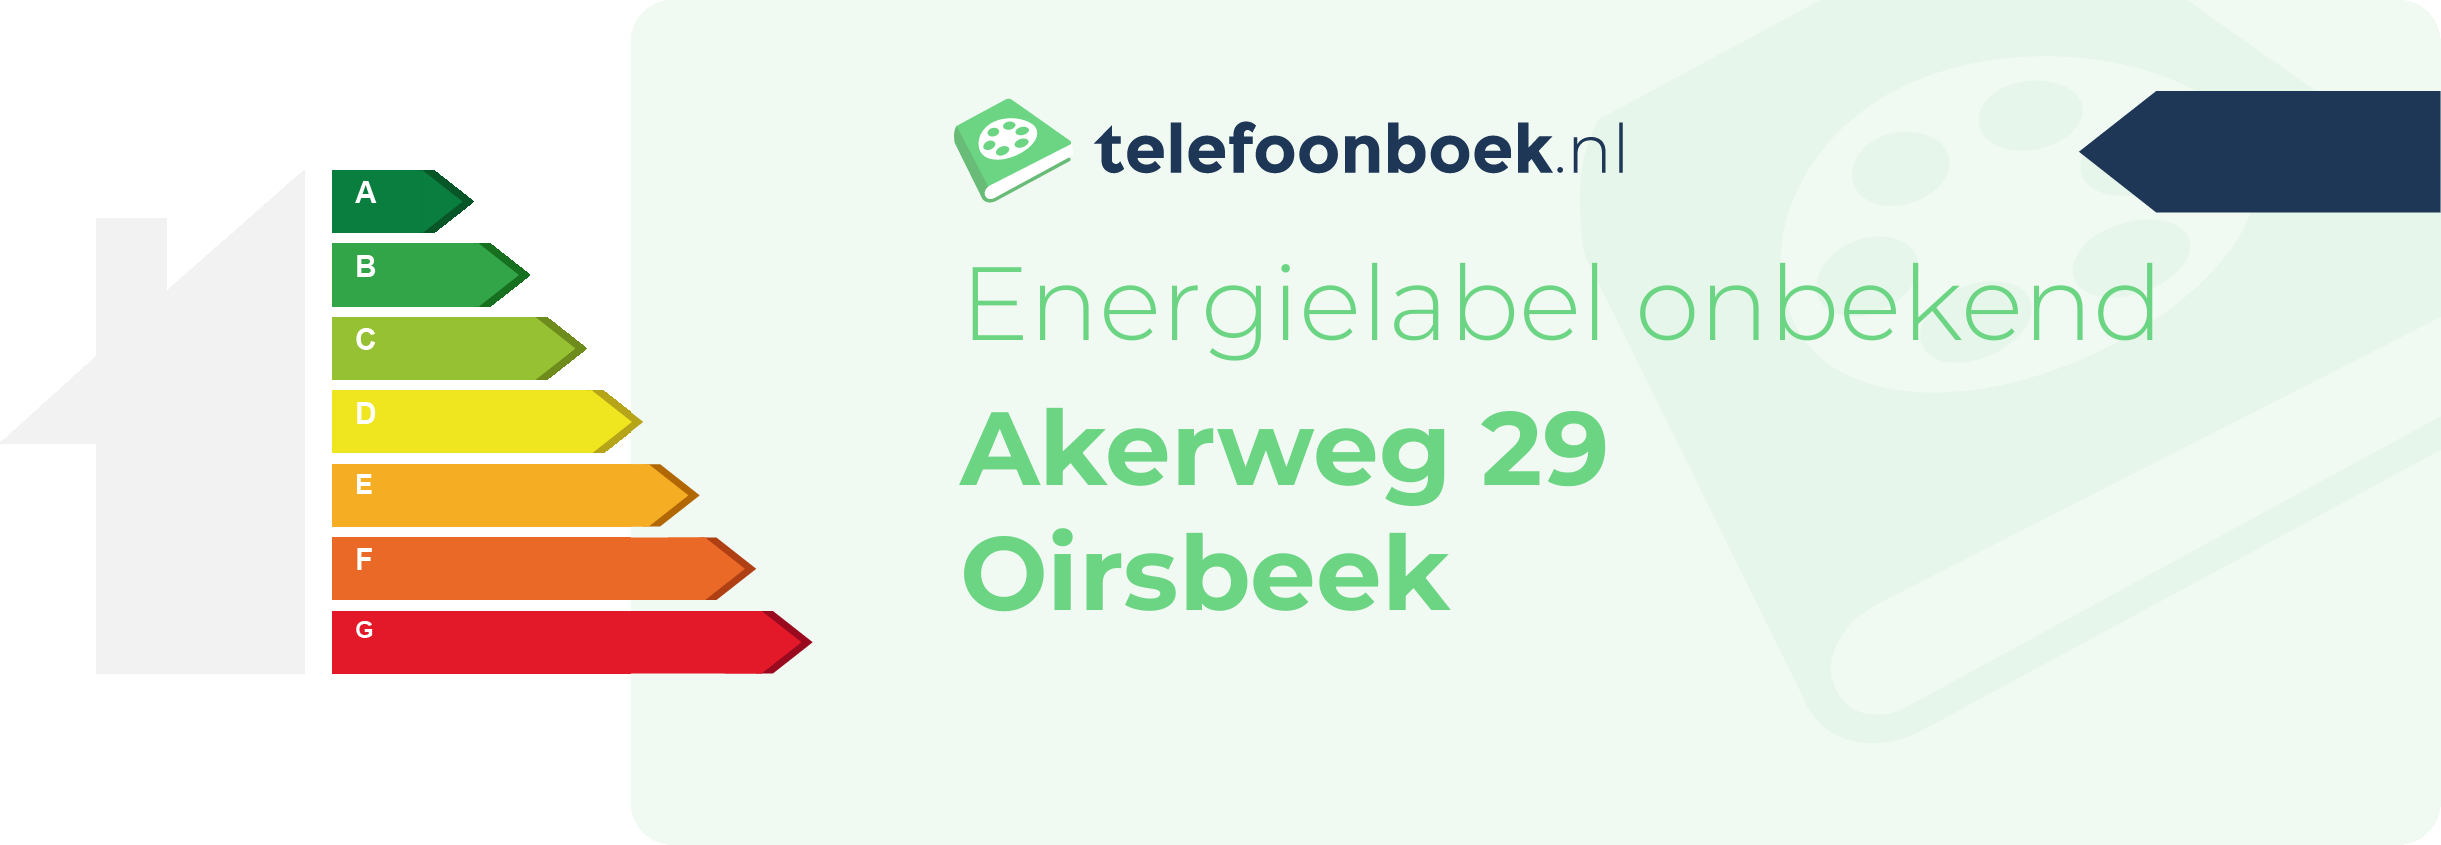 Energielabel Akerweg 29 Oirsbeek